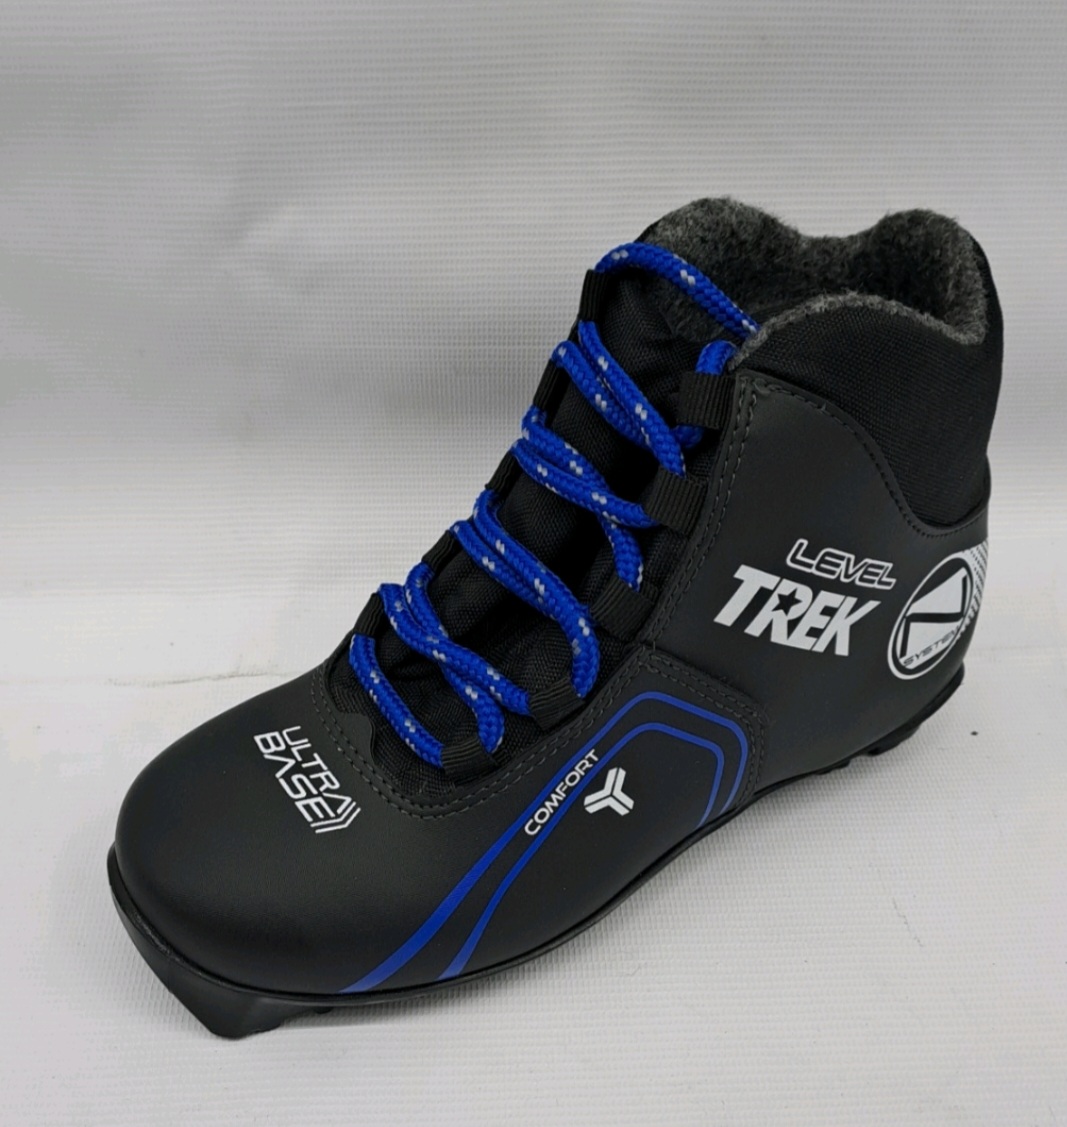 Ботинки лыжные TREK Level 3 черный лого синий RU38, EU39, CM24,5                                           